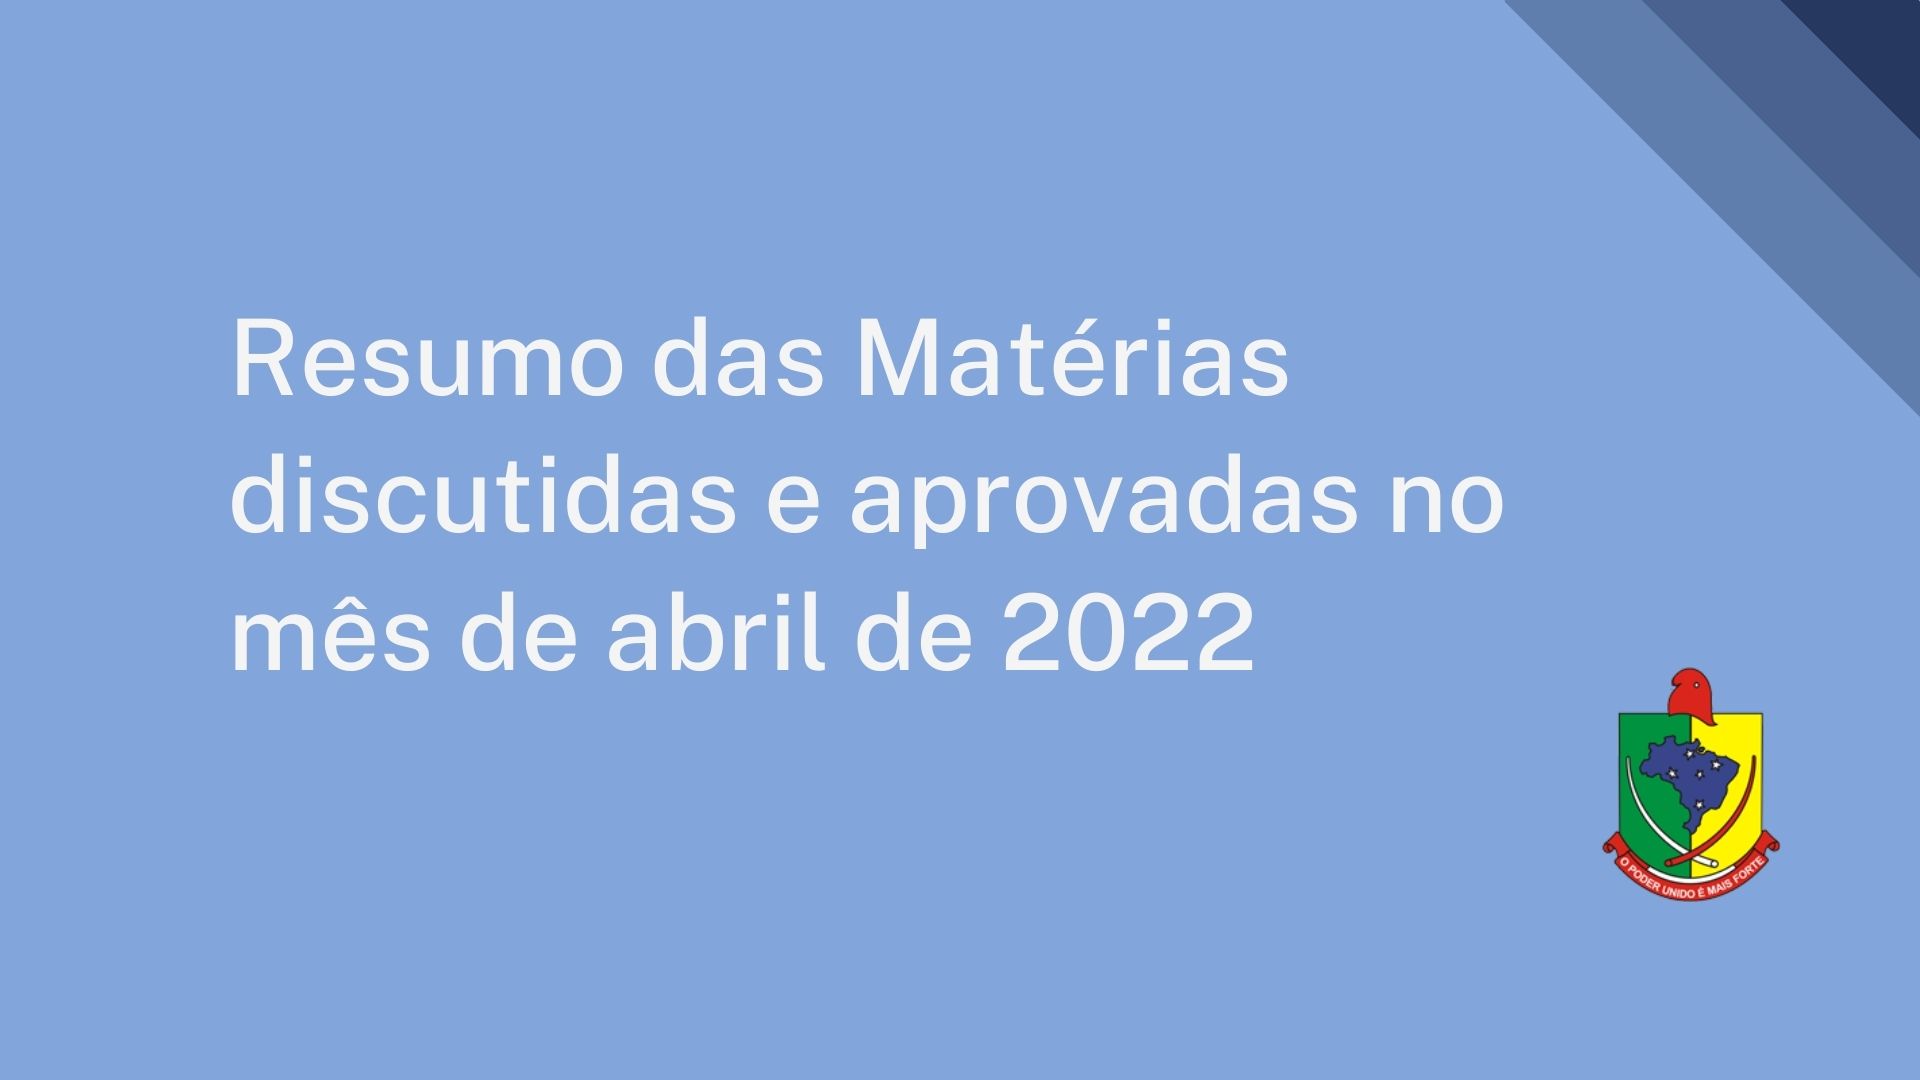 Resumo das Matérias discutidas e aprovadas no mês de abril de 2022